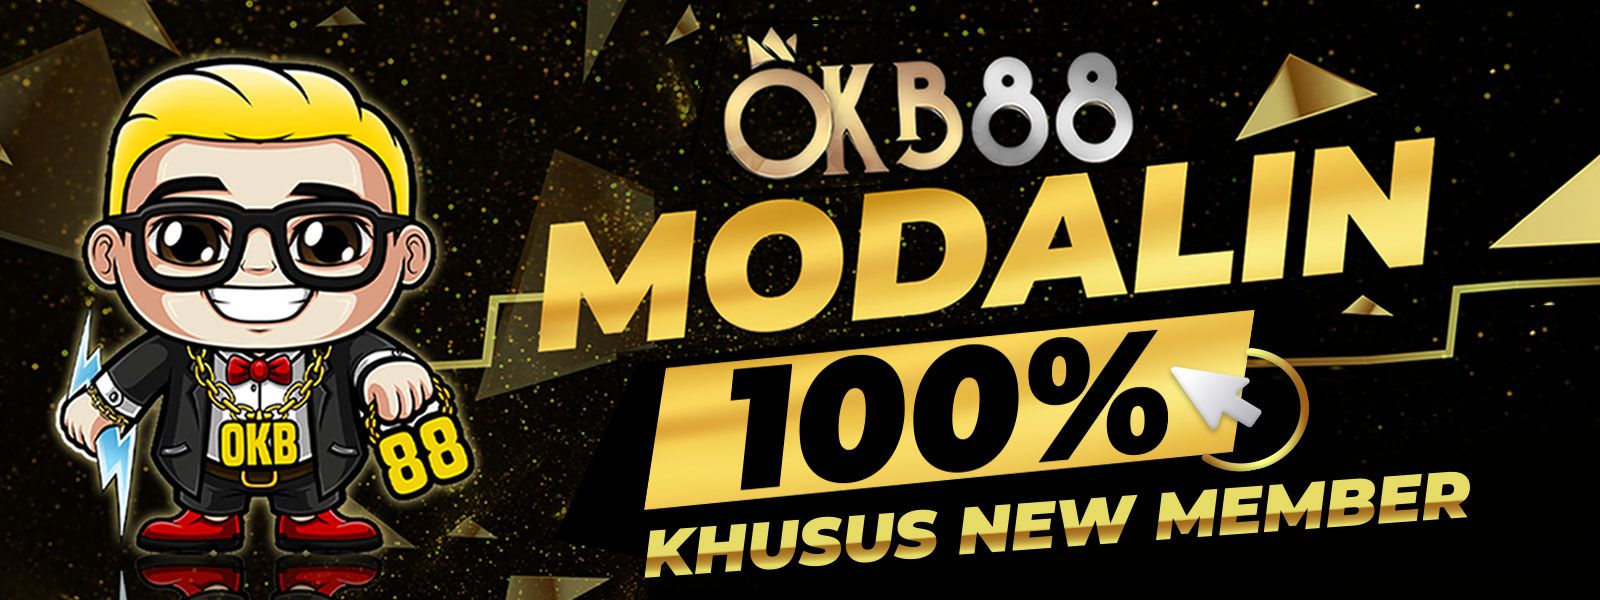 OKB88 MODALIN 100%